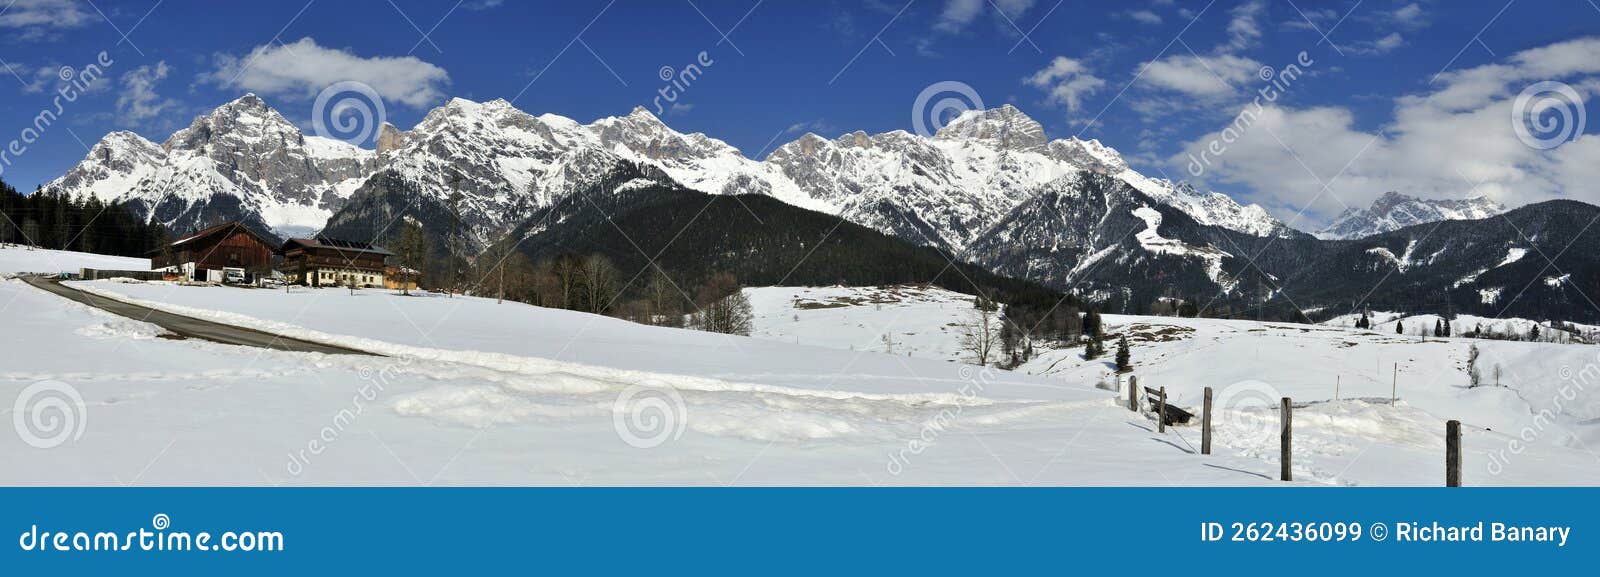 griesbachwinkl, maria alm am steinernen meer, salzburg pinzgau region, austria